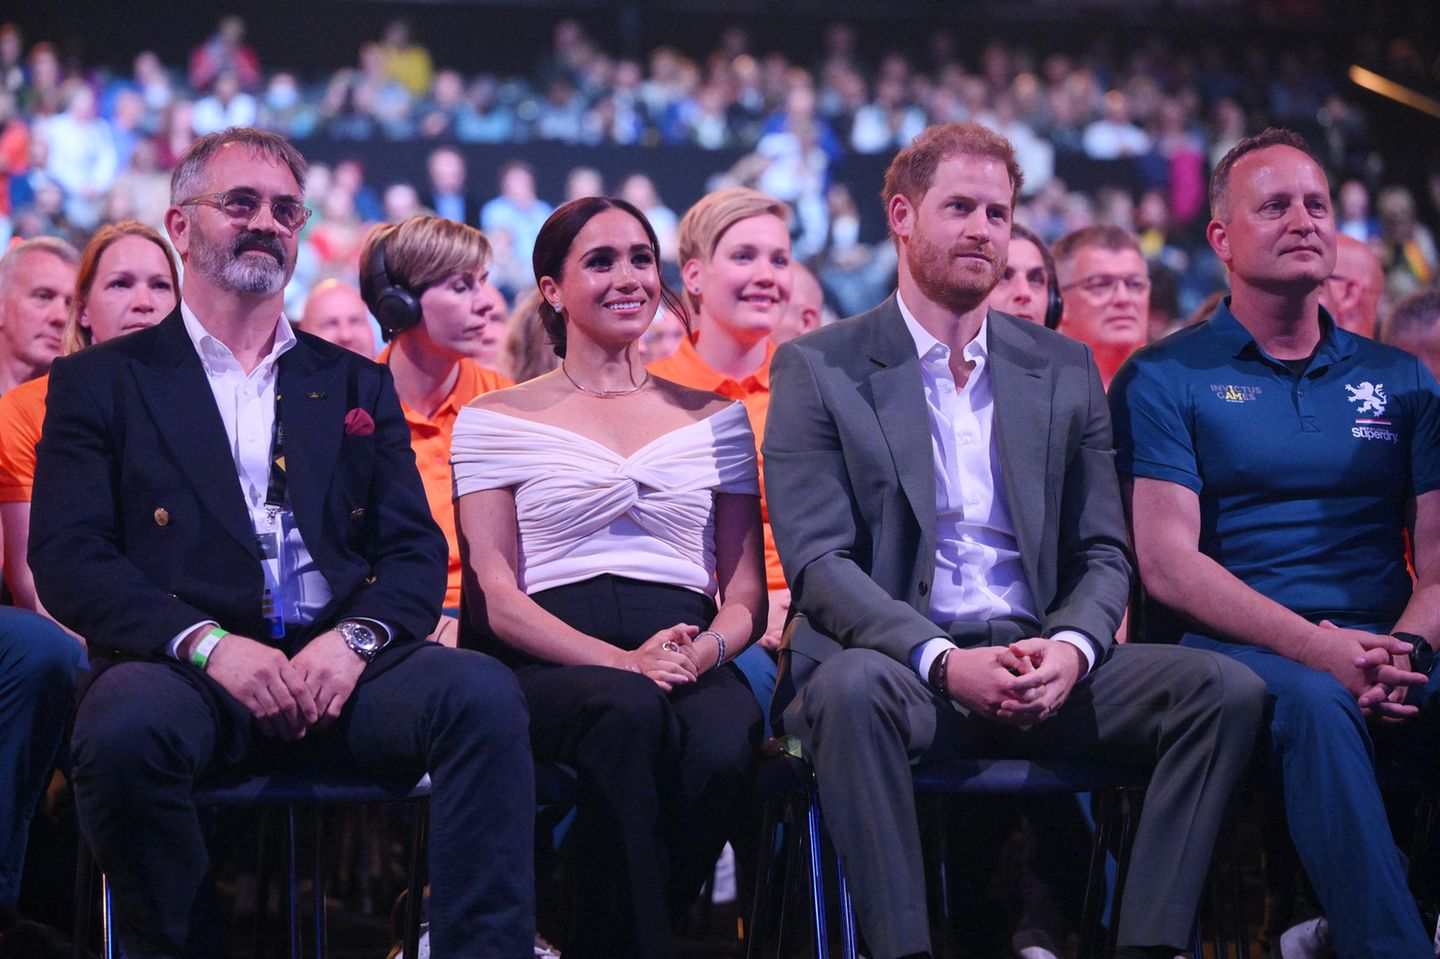 Nachdem das Ehepaar unter johlendem Applaus in der Arena begrüßt wurde, dürfen sie sich nun auf rund zwei emotionale Stunden freuen. Vor allem an Prinz Harrys Gesichtsausdruck ist abzulesen, wie viel ihm dieser Abend bedeutet.